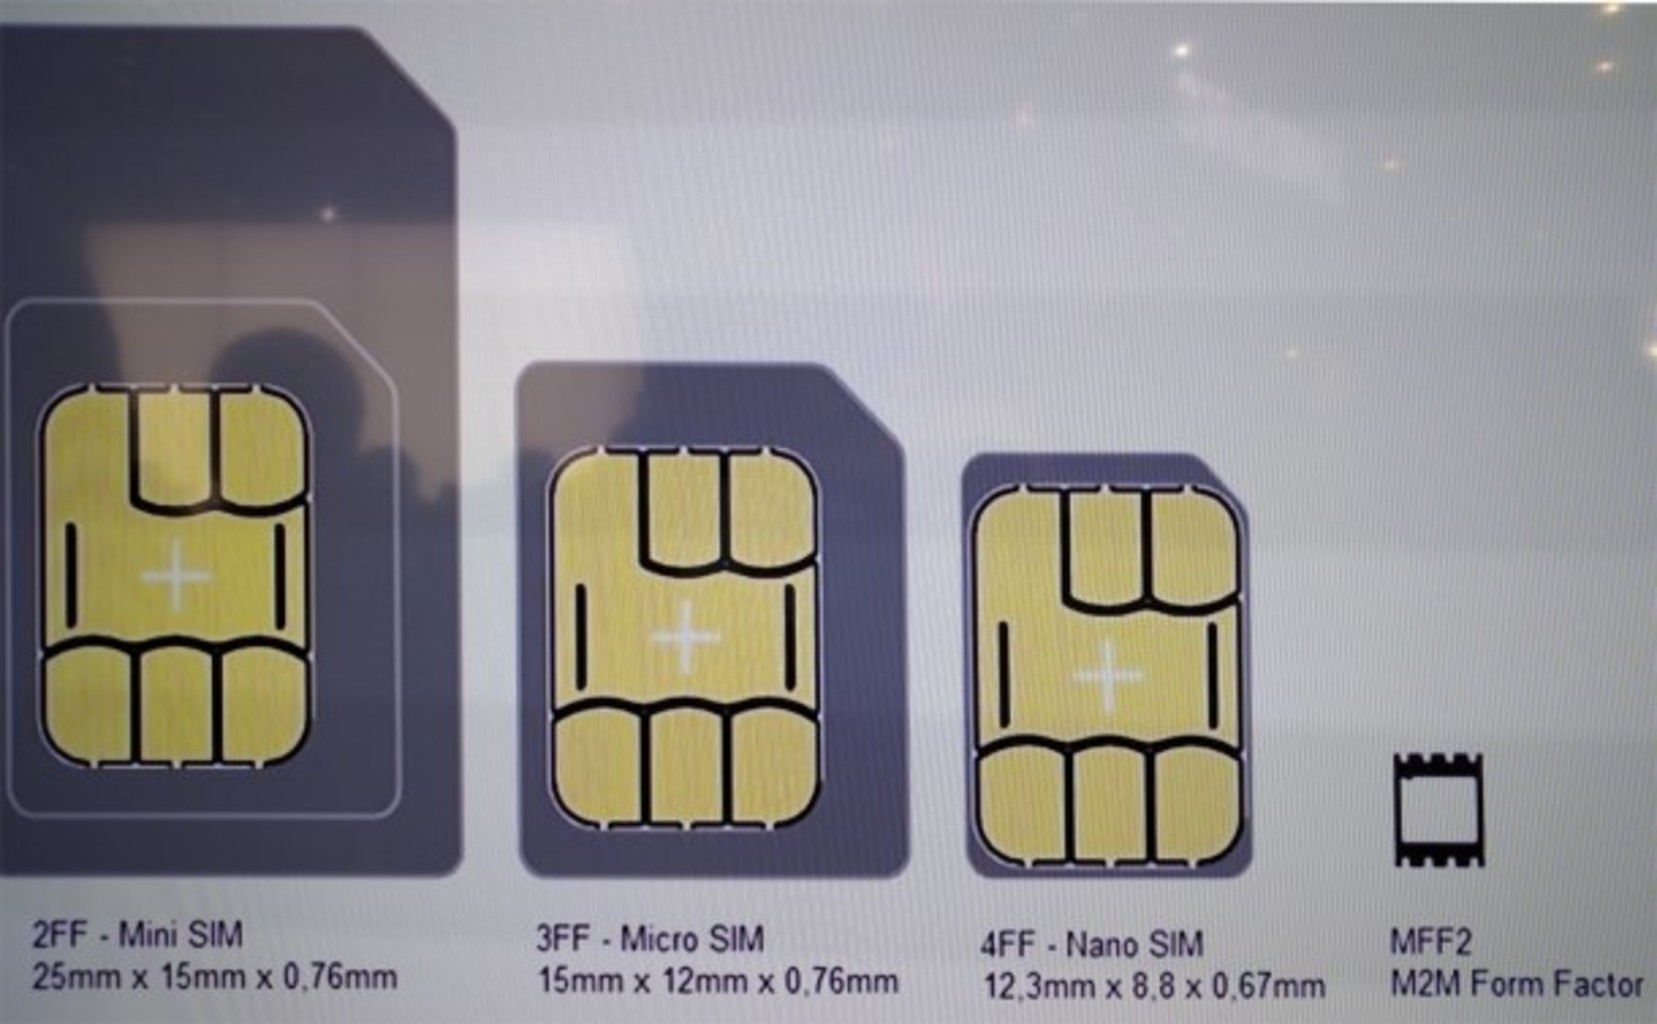 1 sim 1 esim. Mini SIM 2ff. 2ff SIM карта. Micro SIM Card 3ff. Esim 2sim.